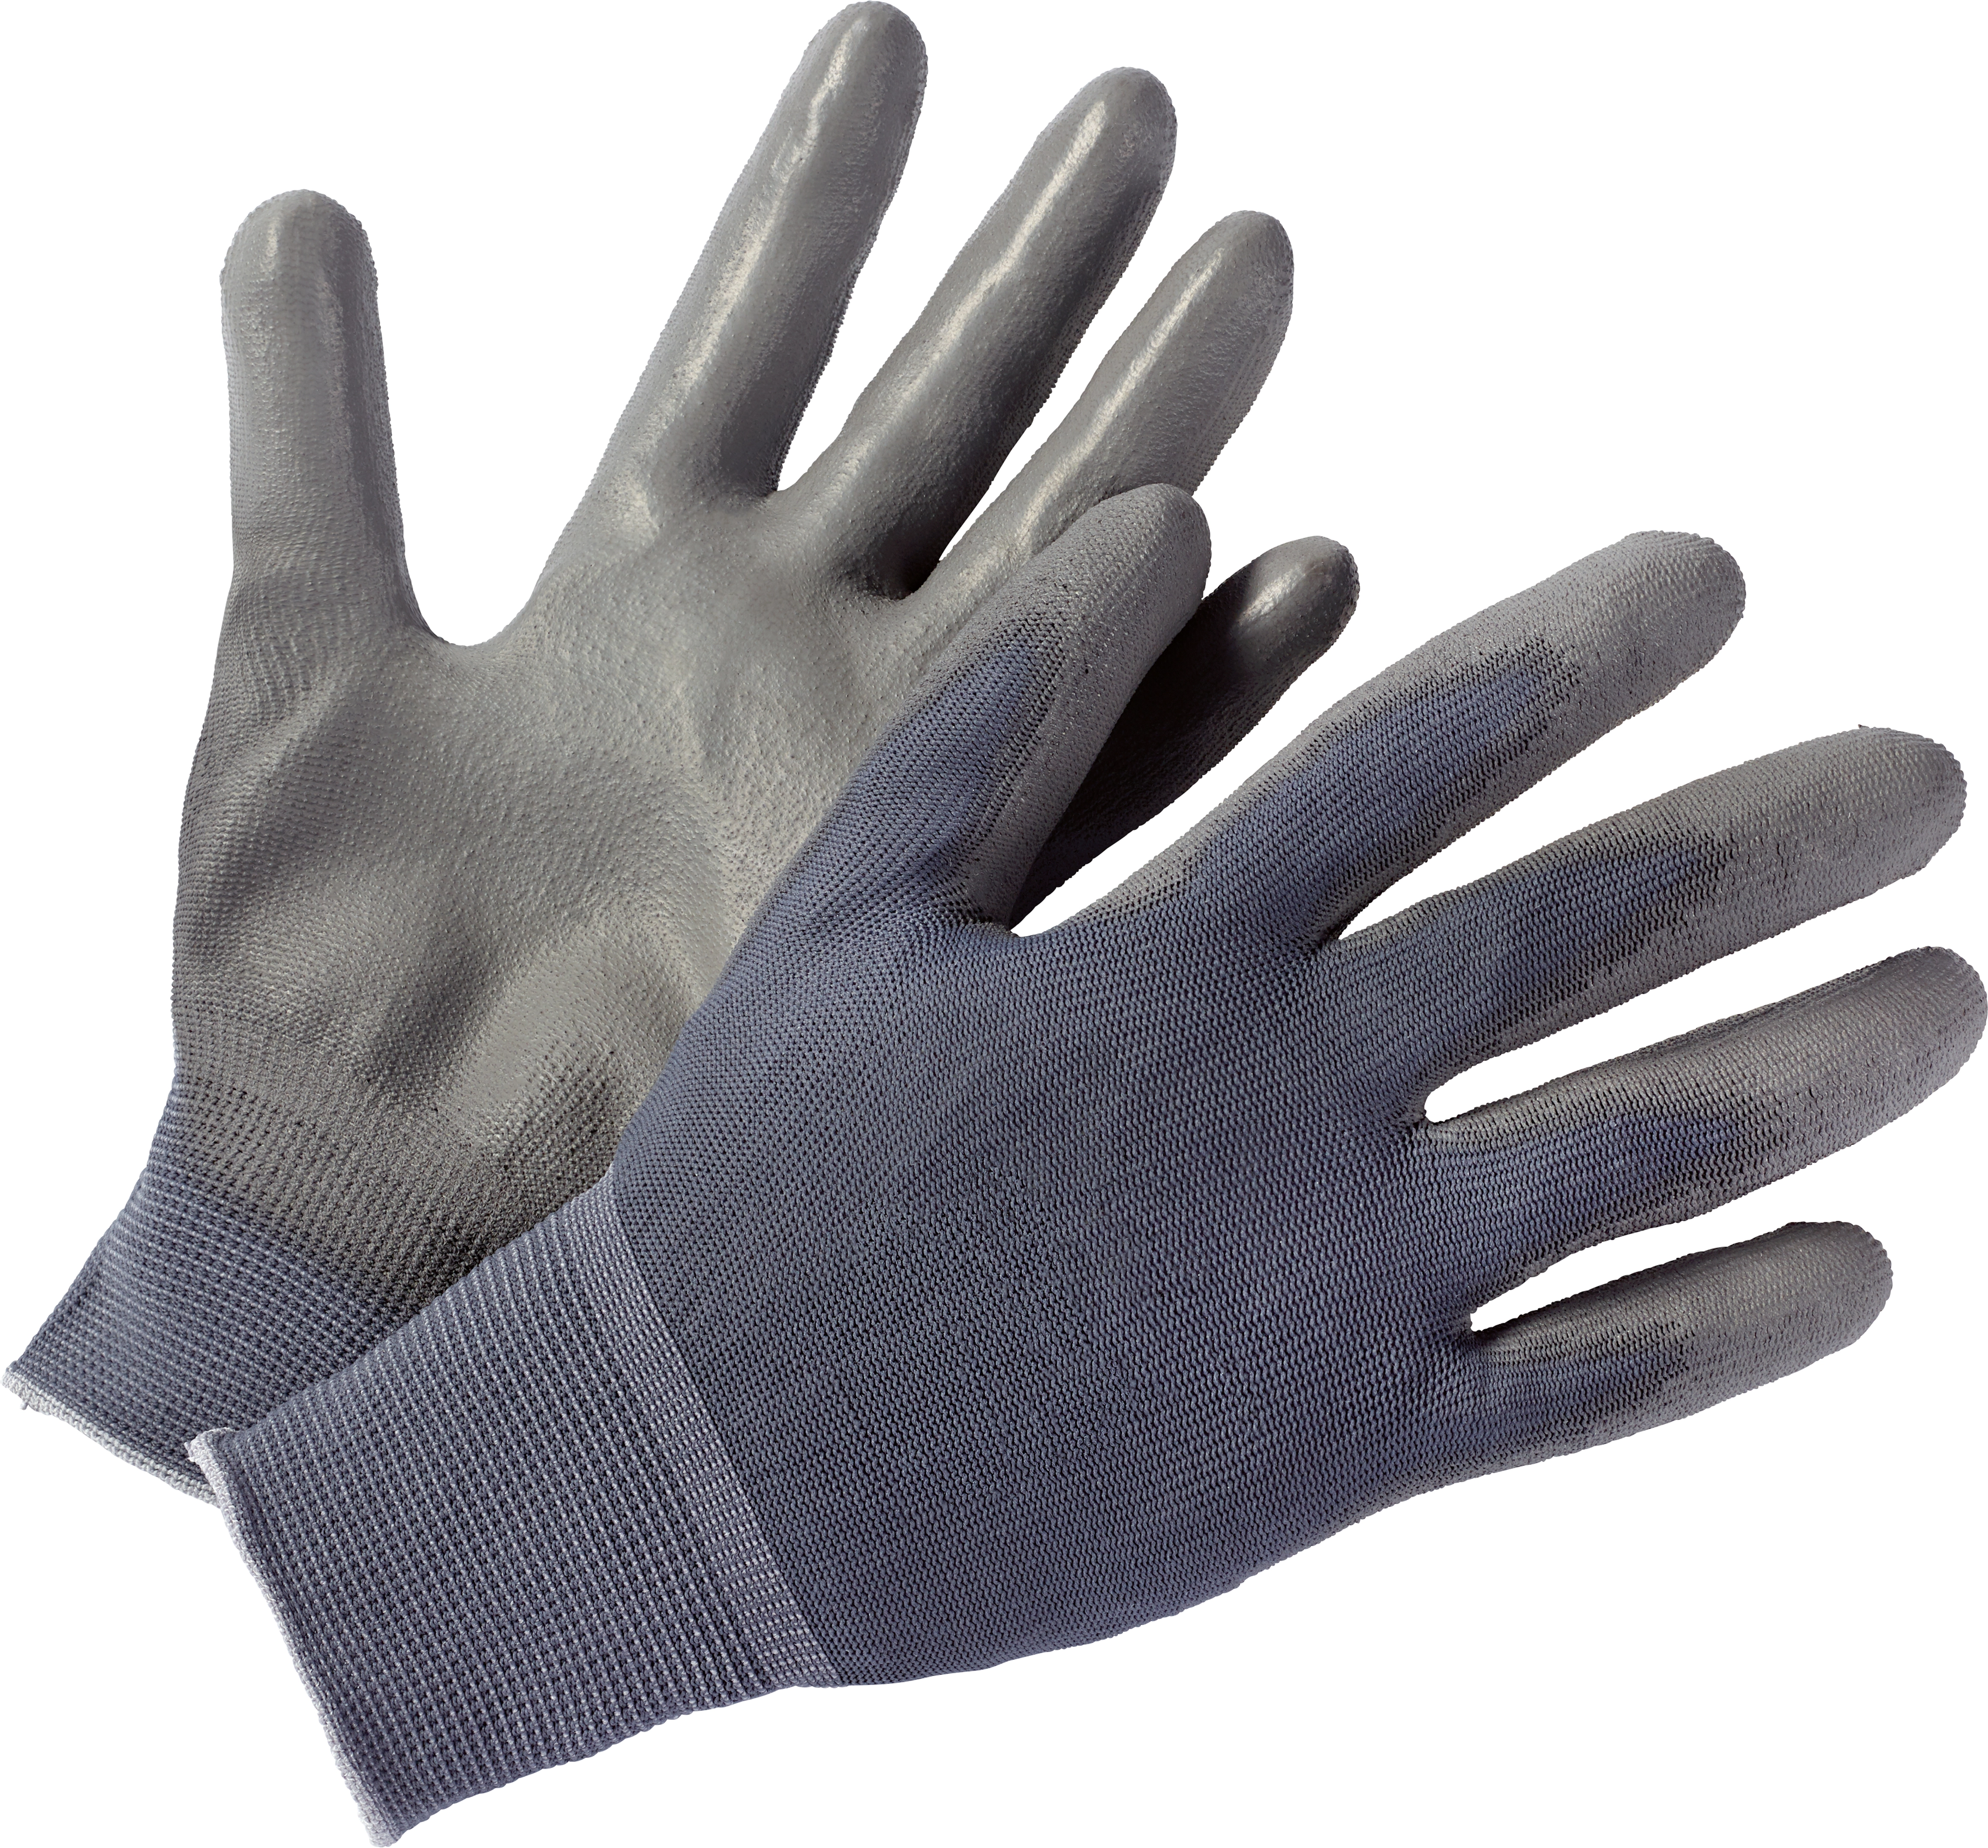 Montage-Handschuhe PU Gr. 9 kaufen bei OBI